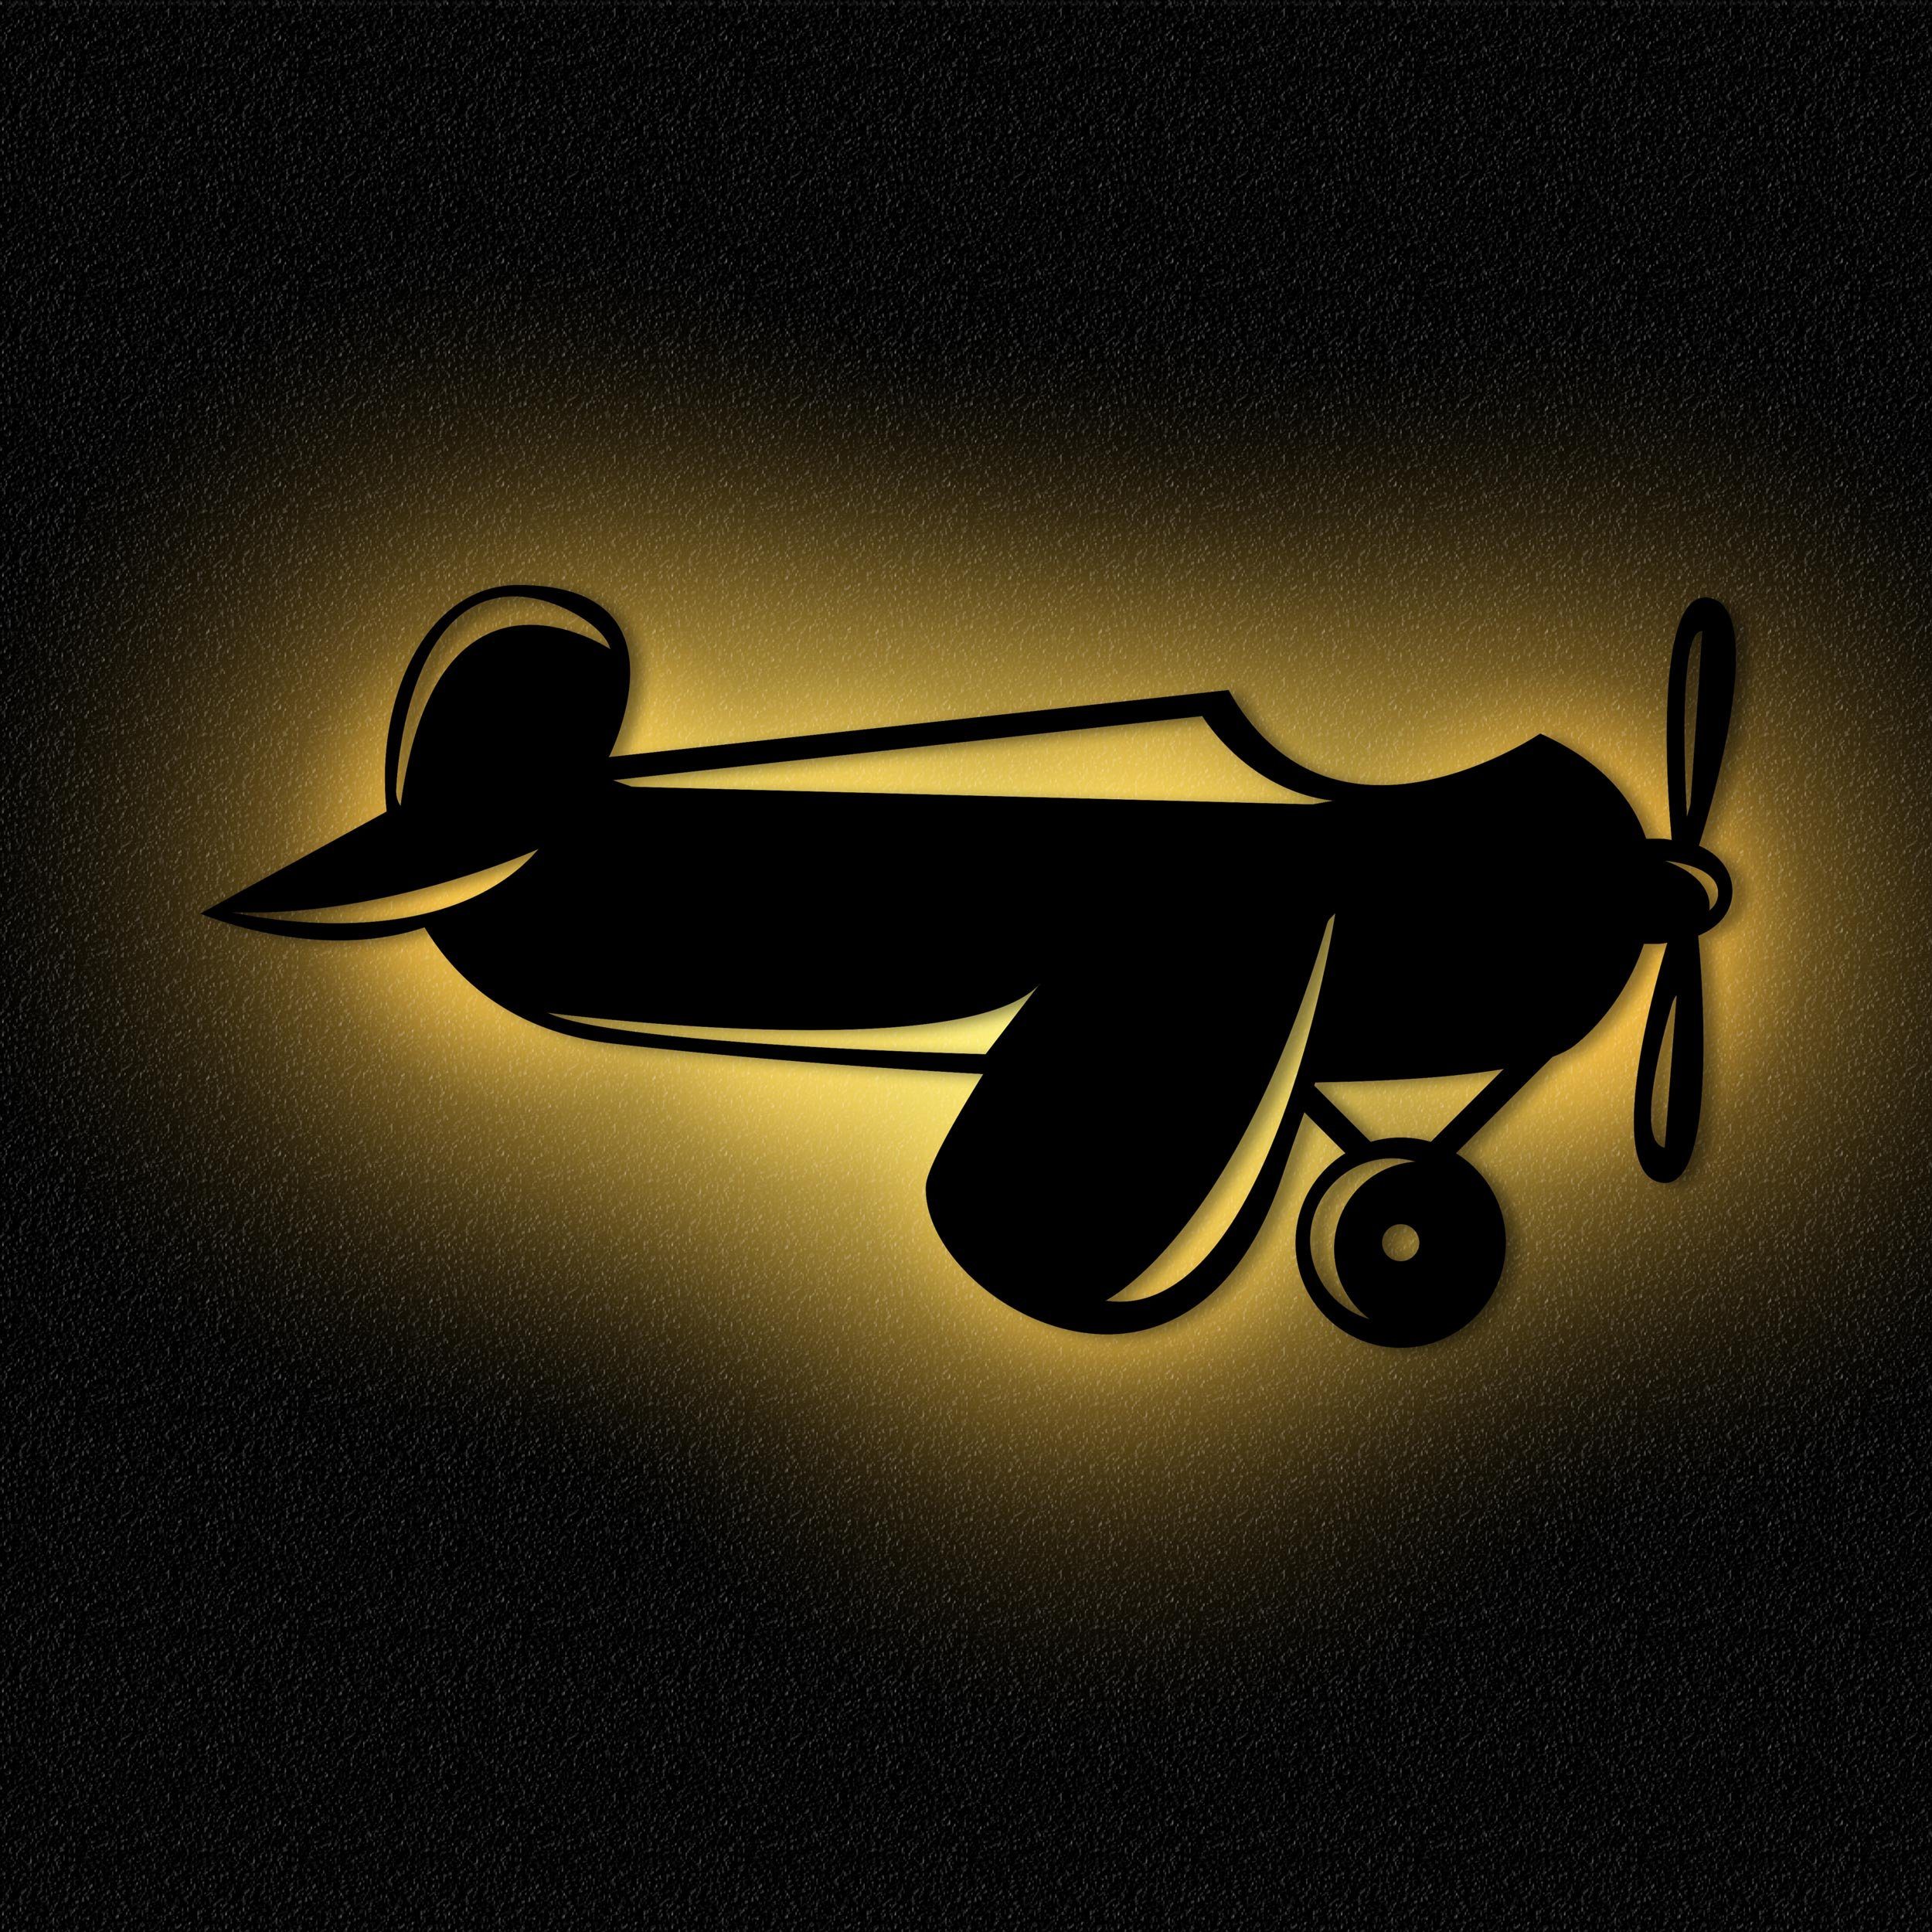 Namofactur LED Nachtlicht Nachtlicht Flugzeug Wandlampe Holz Wand Deko Lampe Kinderzimmer, Ohne Zugschalter/Stern, LED fest integriert, Warmweiß Unbehandelt